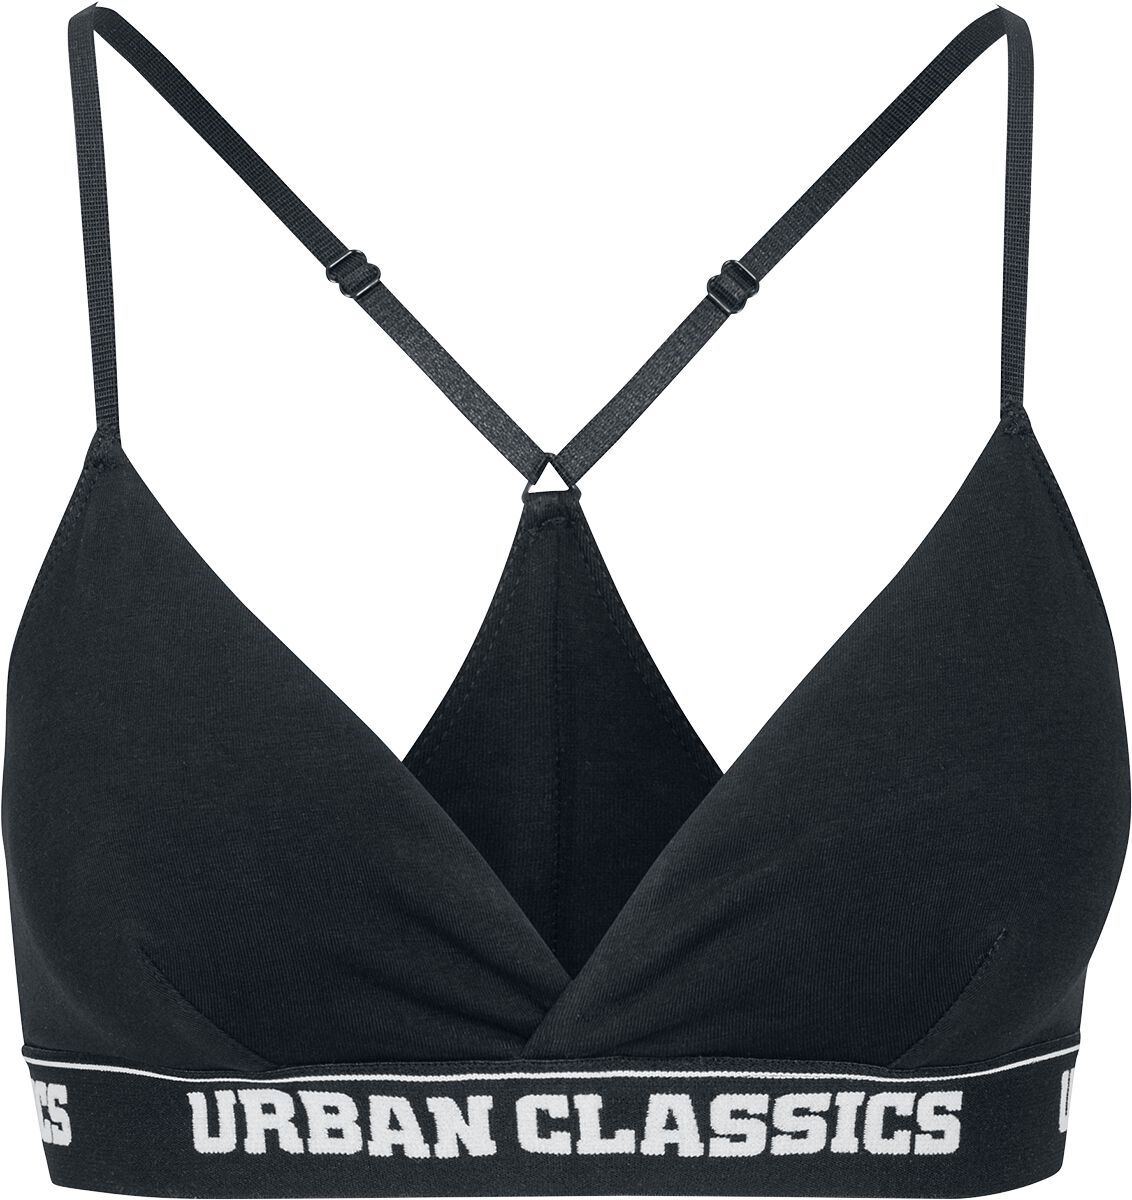 Image of Urban Classics Ladies Triangle Logo Bra Bustier schwarz